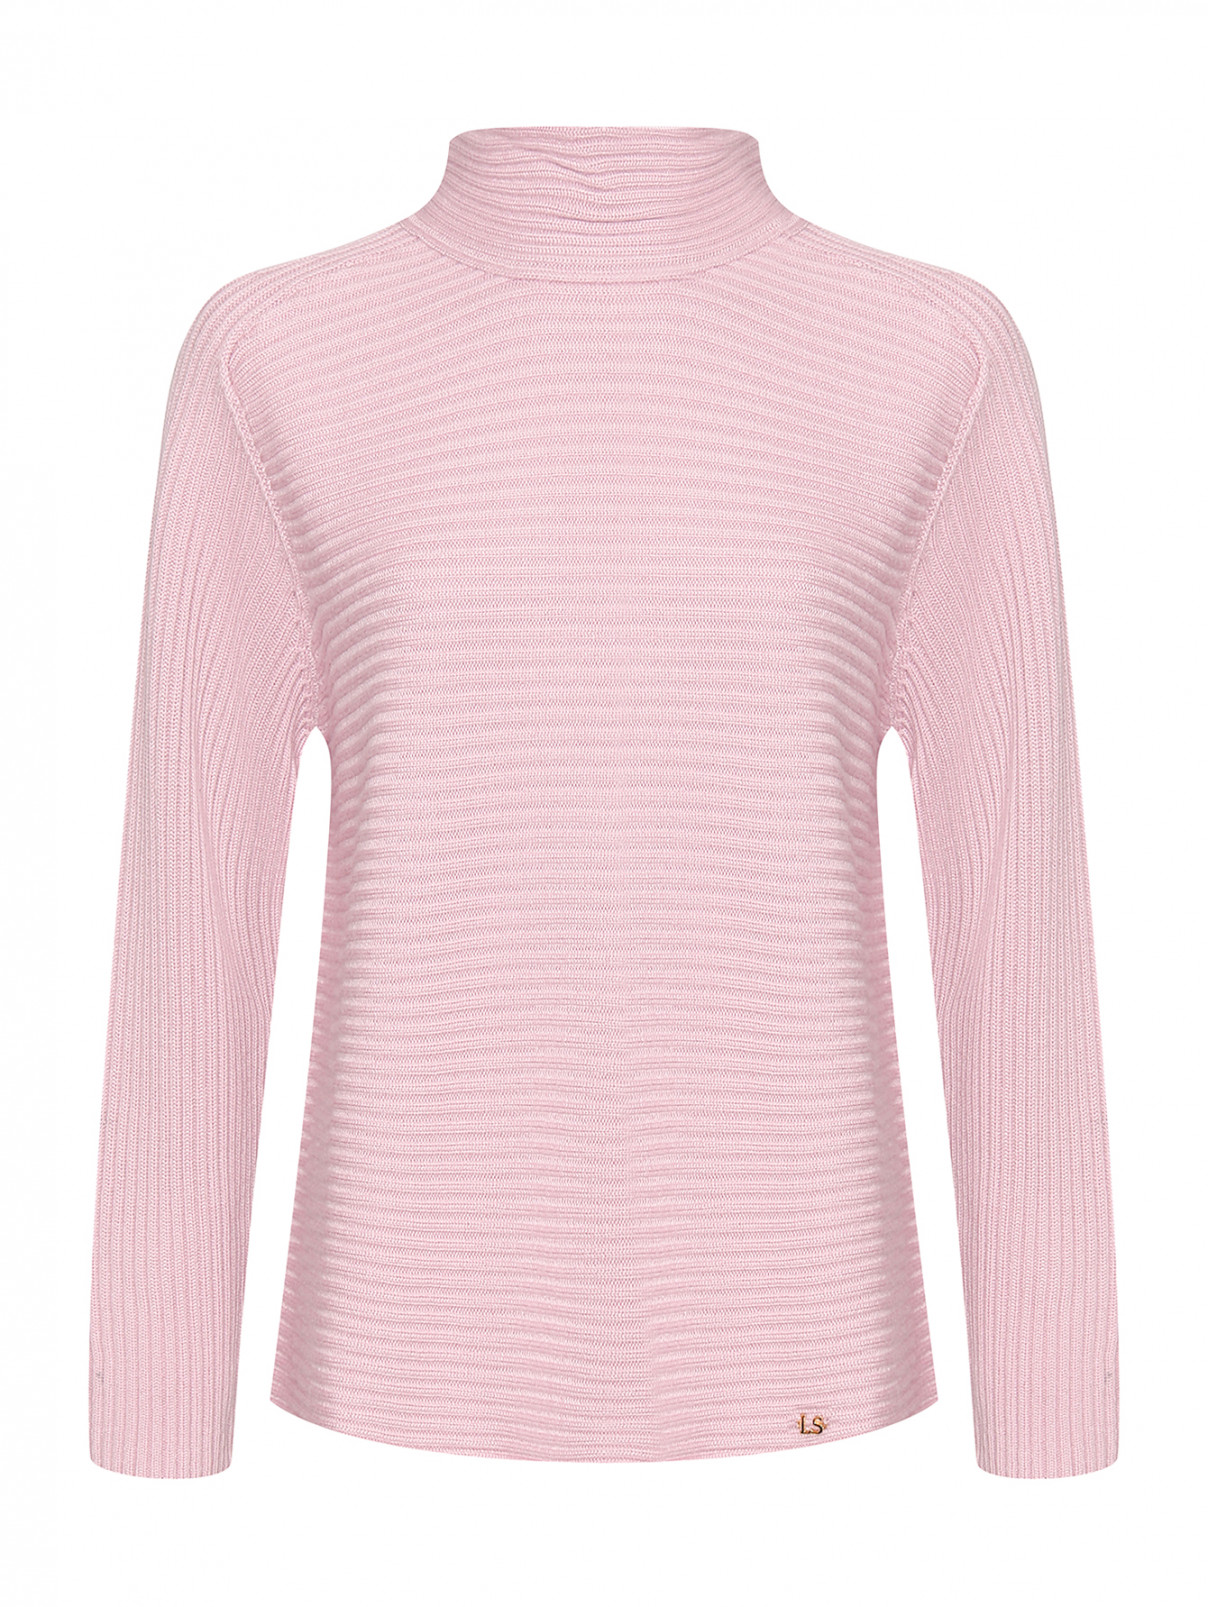 Шерстяной свитер Luisa Spagnoli  –  Общий вид  – Цвет:  Фиолетовый